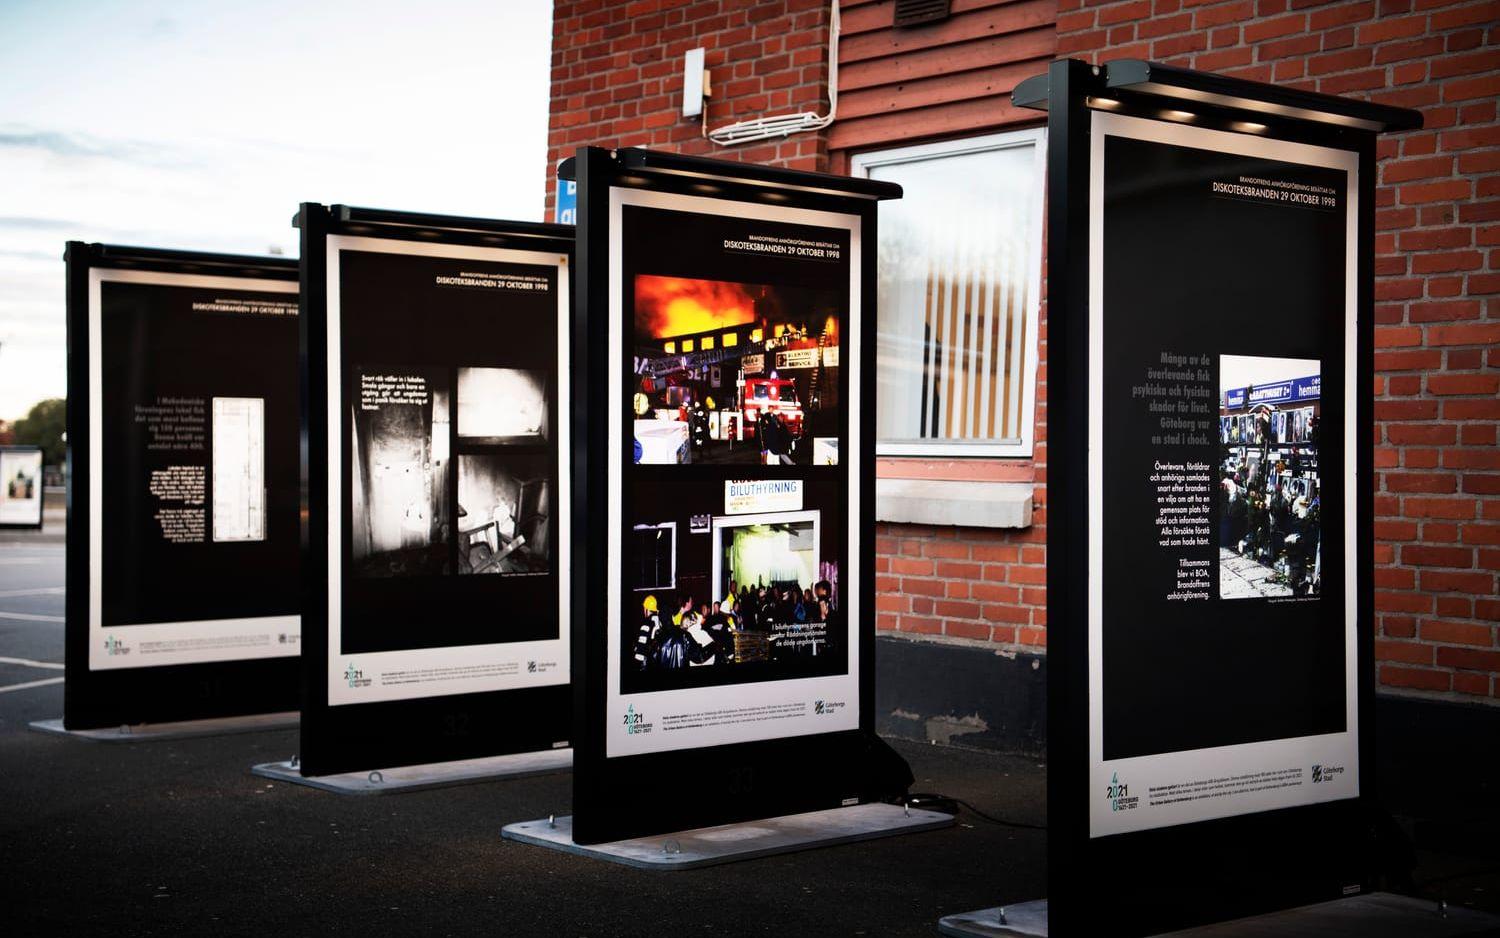 Samtidigt som Faces of youth, visas också en ny minnesutställning från Brandoffrens anhörigförening, BOA, som skapats tillsammans med konstnärskollektivet Kiosken på Ringön.